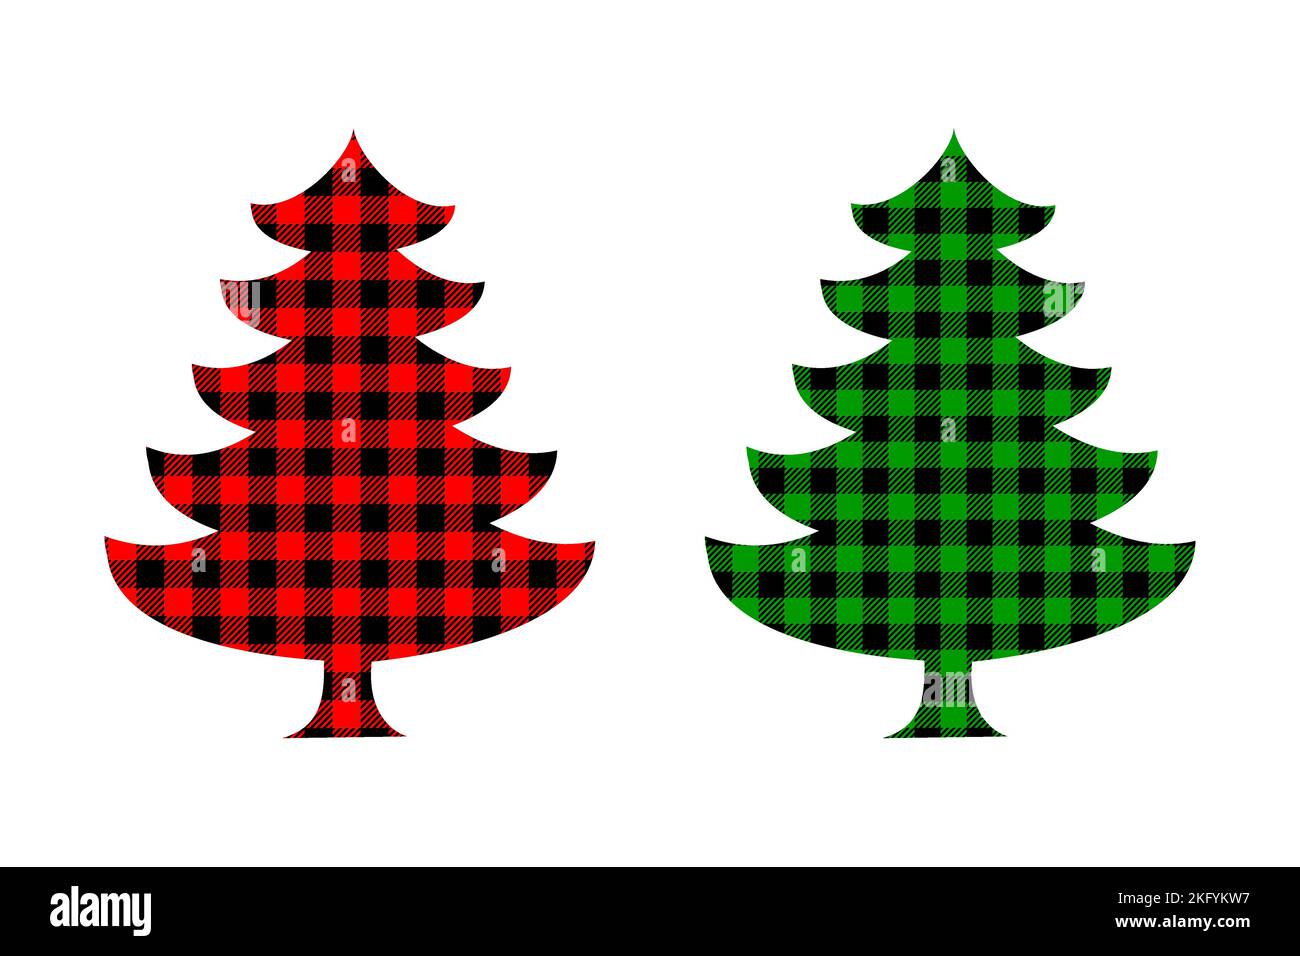 Albero di Natale con motivo di bufalo. Elemento decorativo di Capodanno con texture a scacchi in gingham. Illustrazione piatta vettoriale. Illustrazione Vettoriale